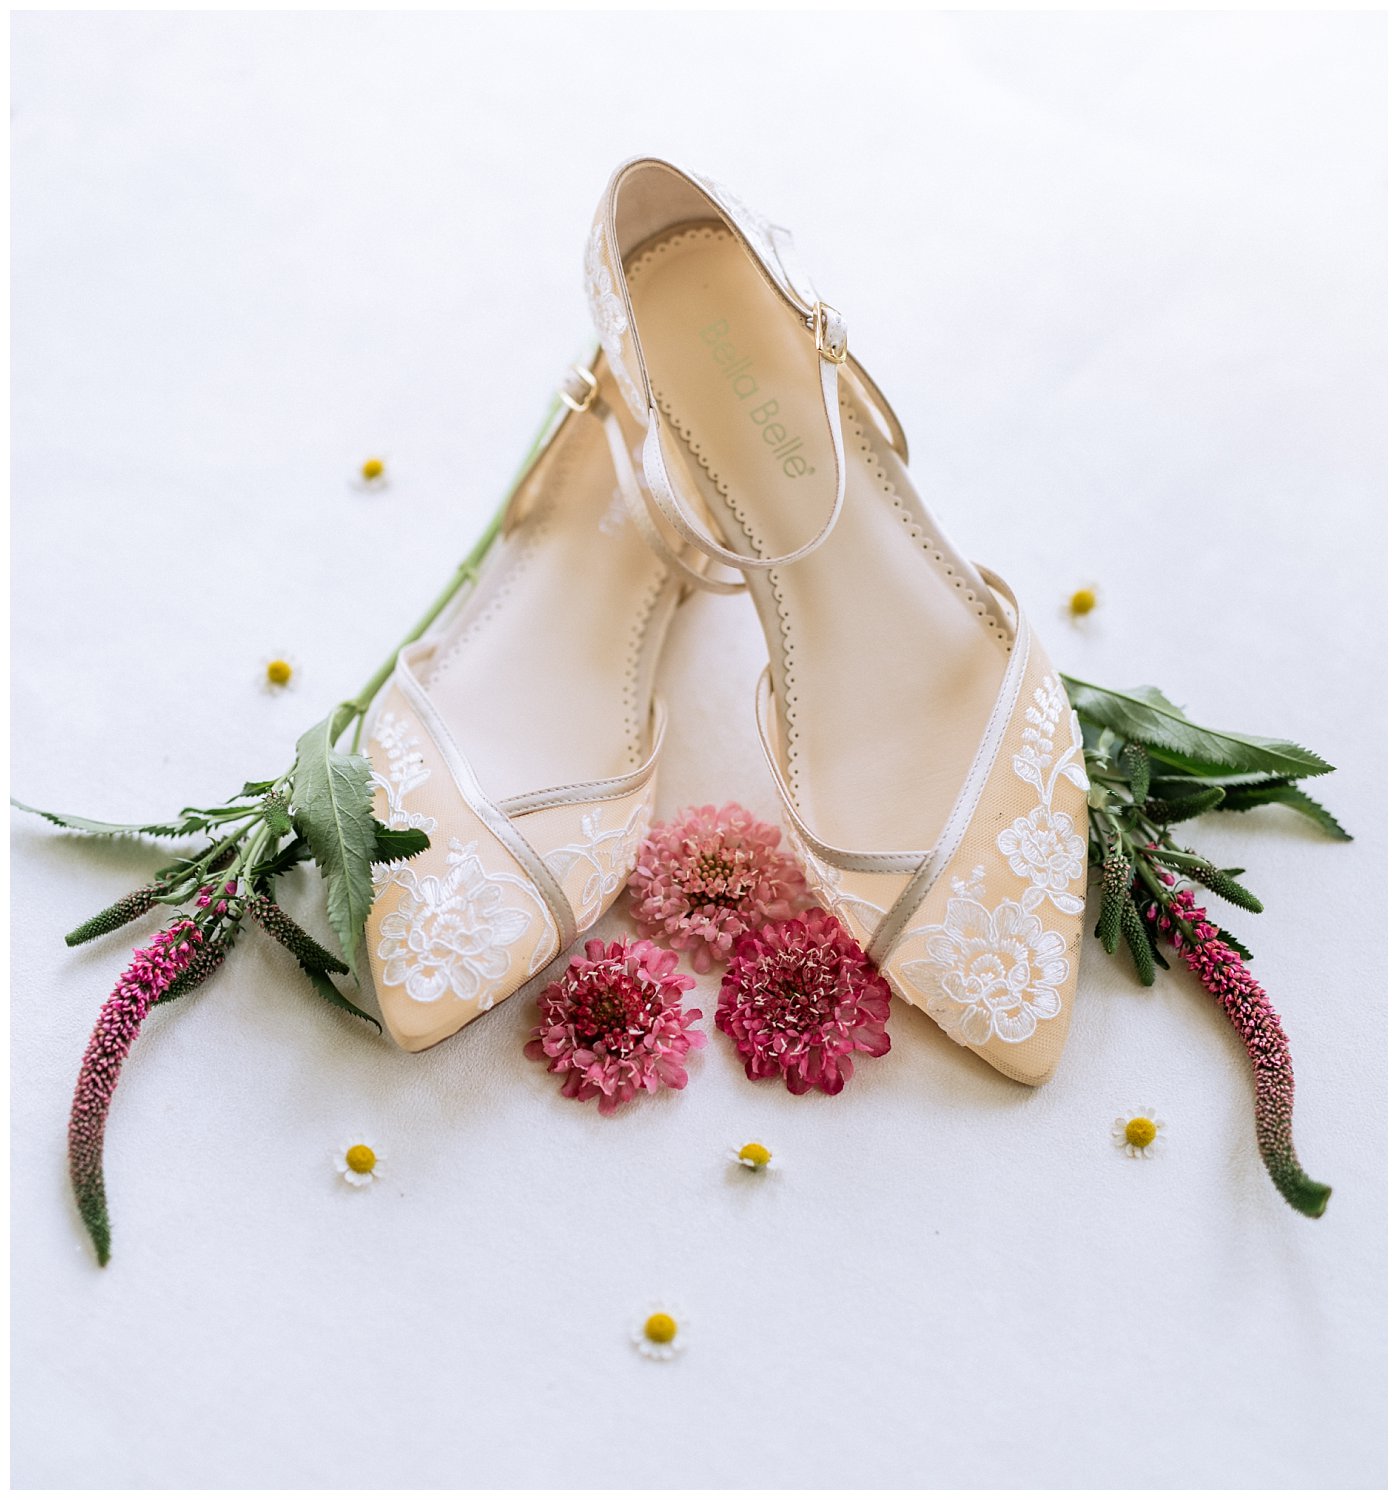 Lace bridal shoes